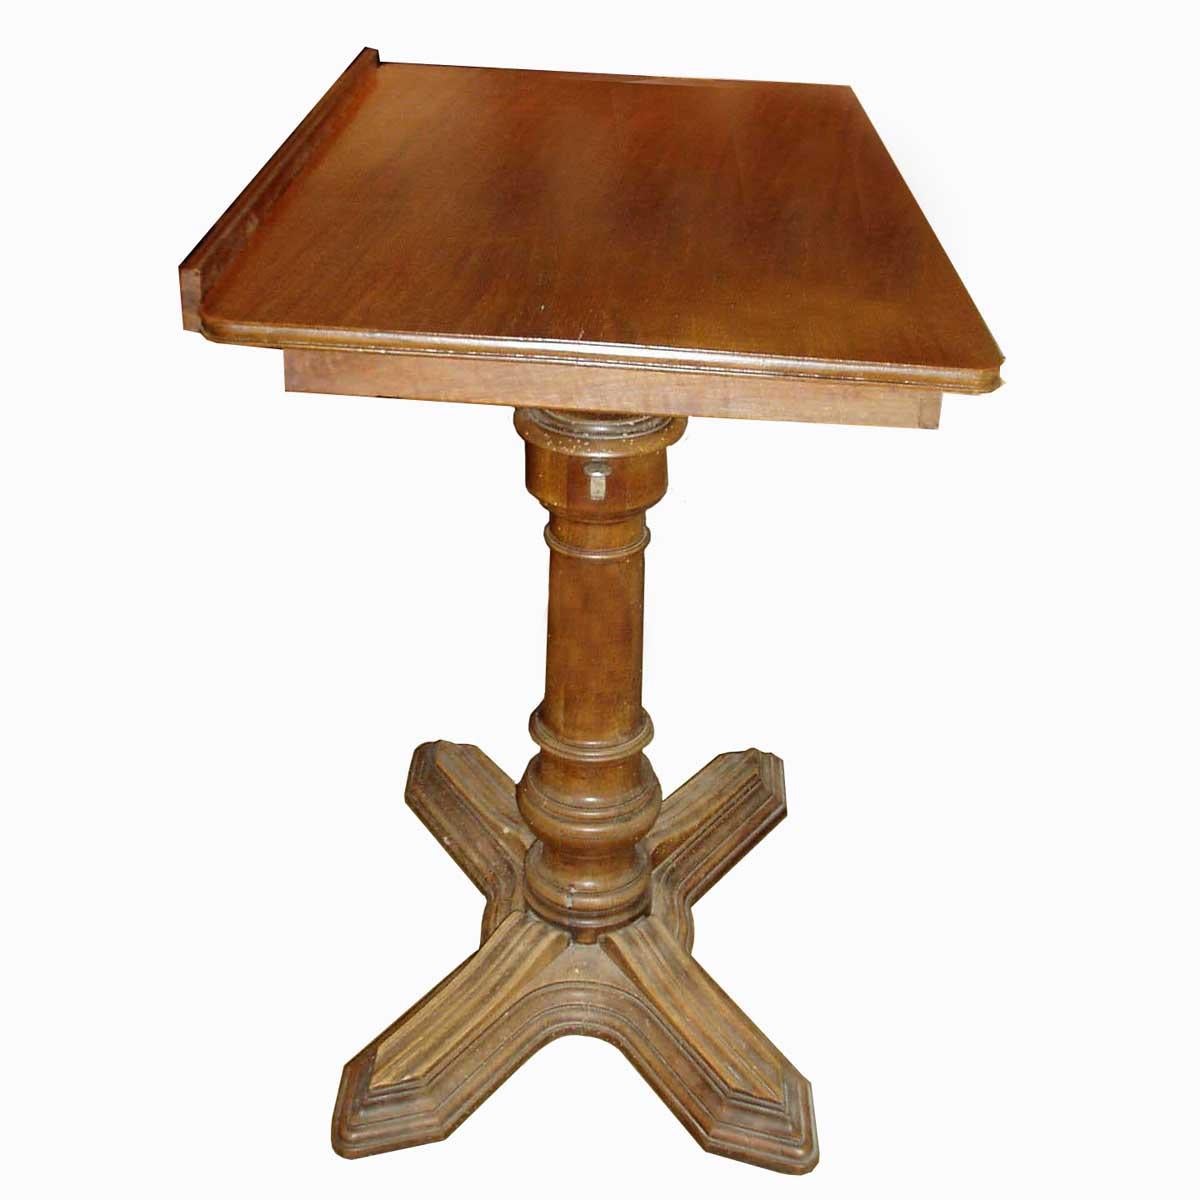 Dieser von E. Chouanard, einem der angesehensten französischen Ingenieure und Designer des 19. Jahrhunderts, entworfene, elegante und metamorphe Tisch, der den Namen Soleil trägt und vollständig aus Nussbaumholz gefertigt ist, kann als